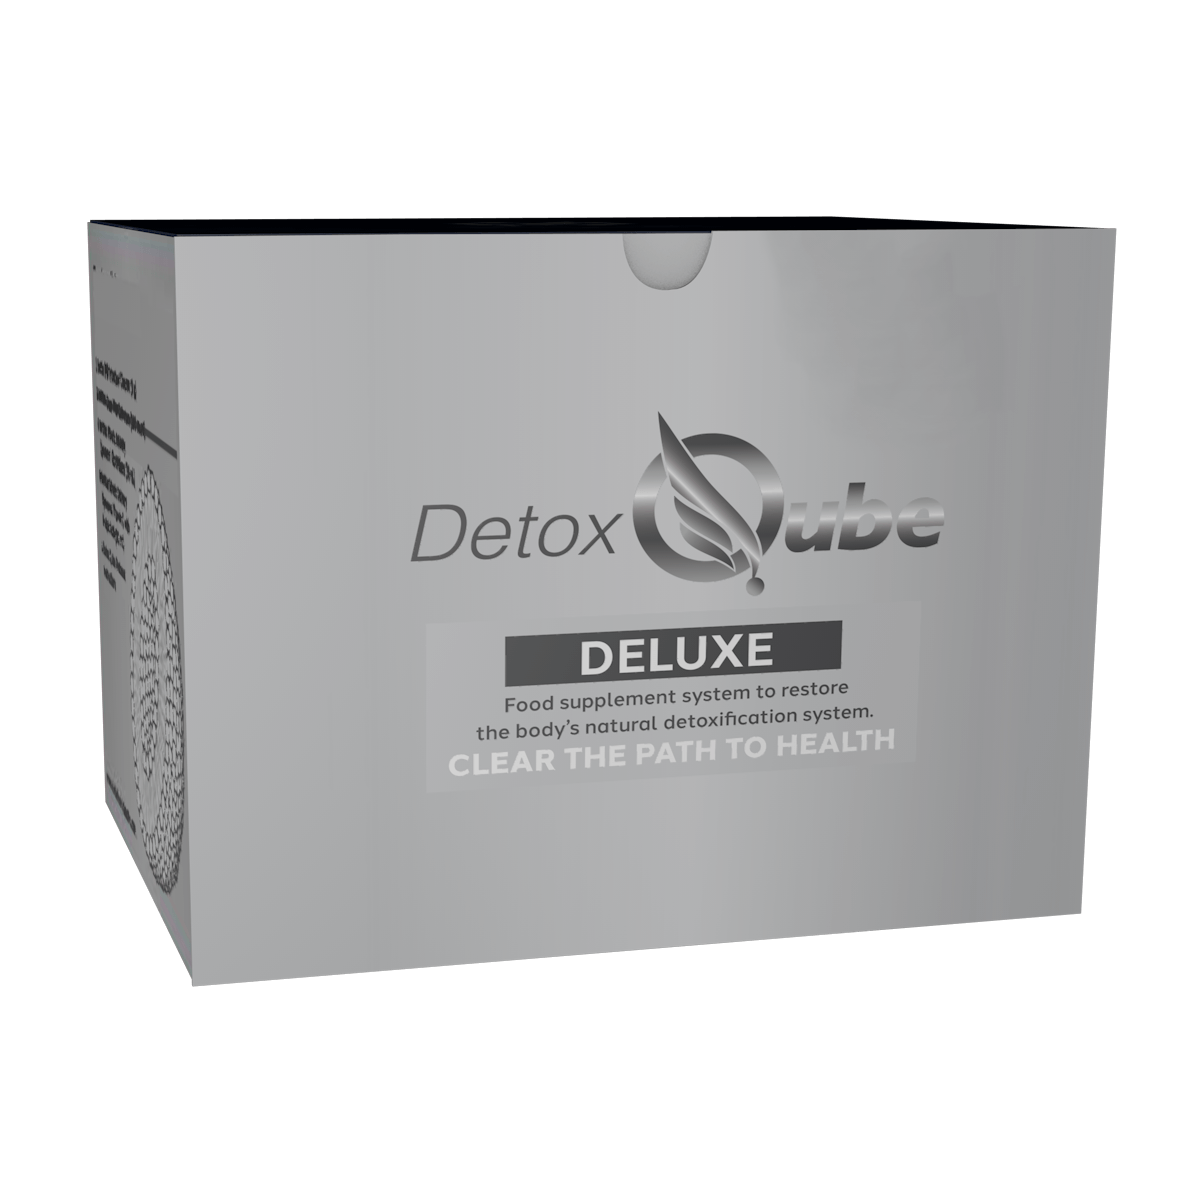 The Deluxe Detox Qube®